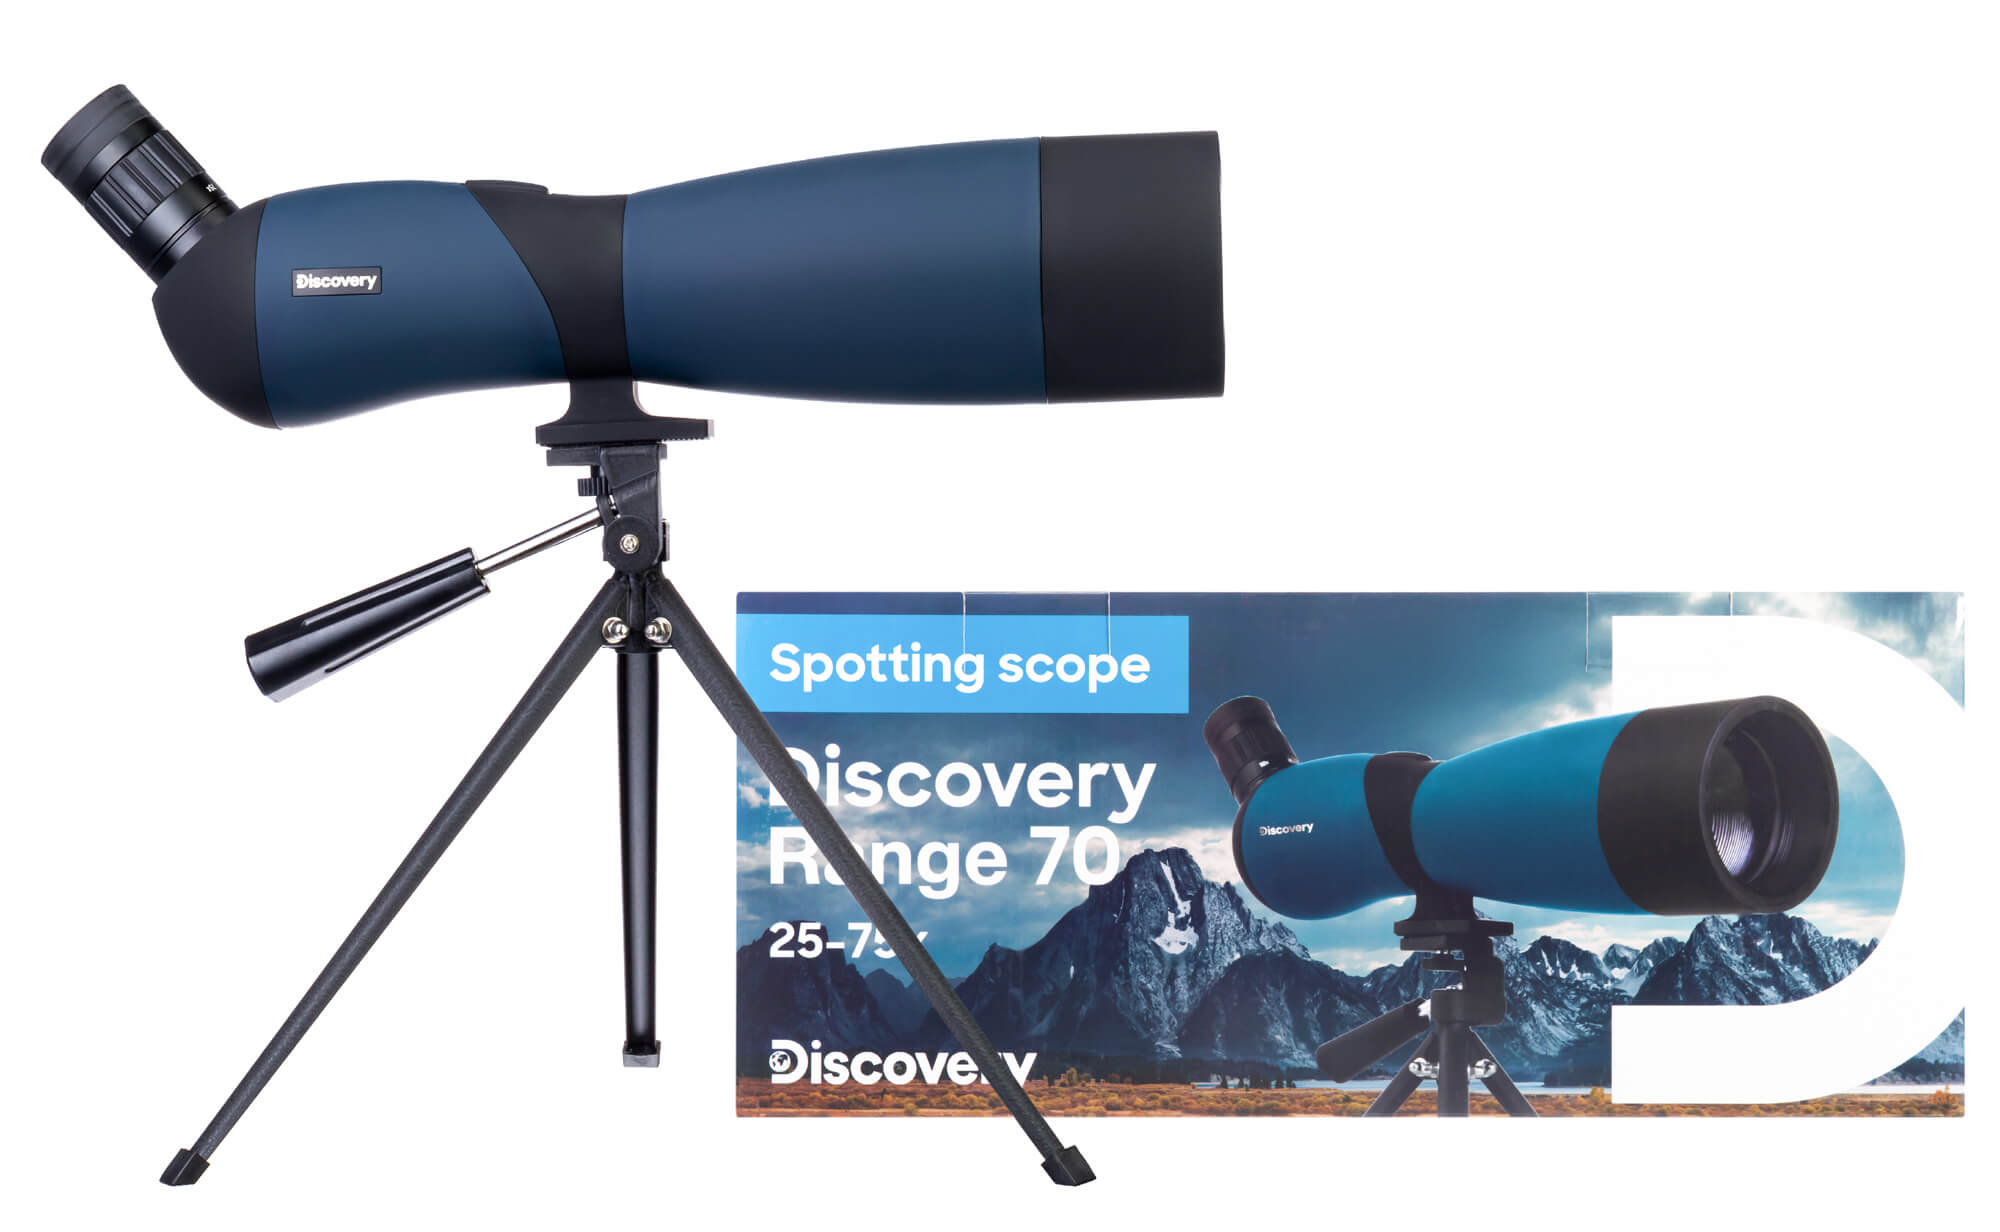 Pozorovací teleskop Discovery Range 70